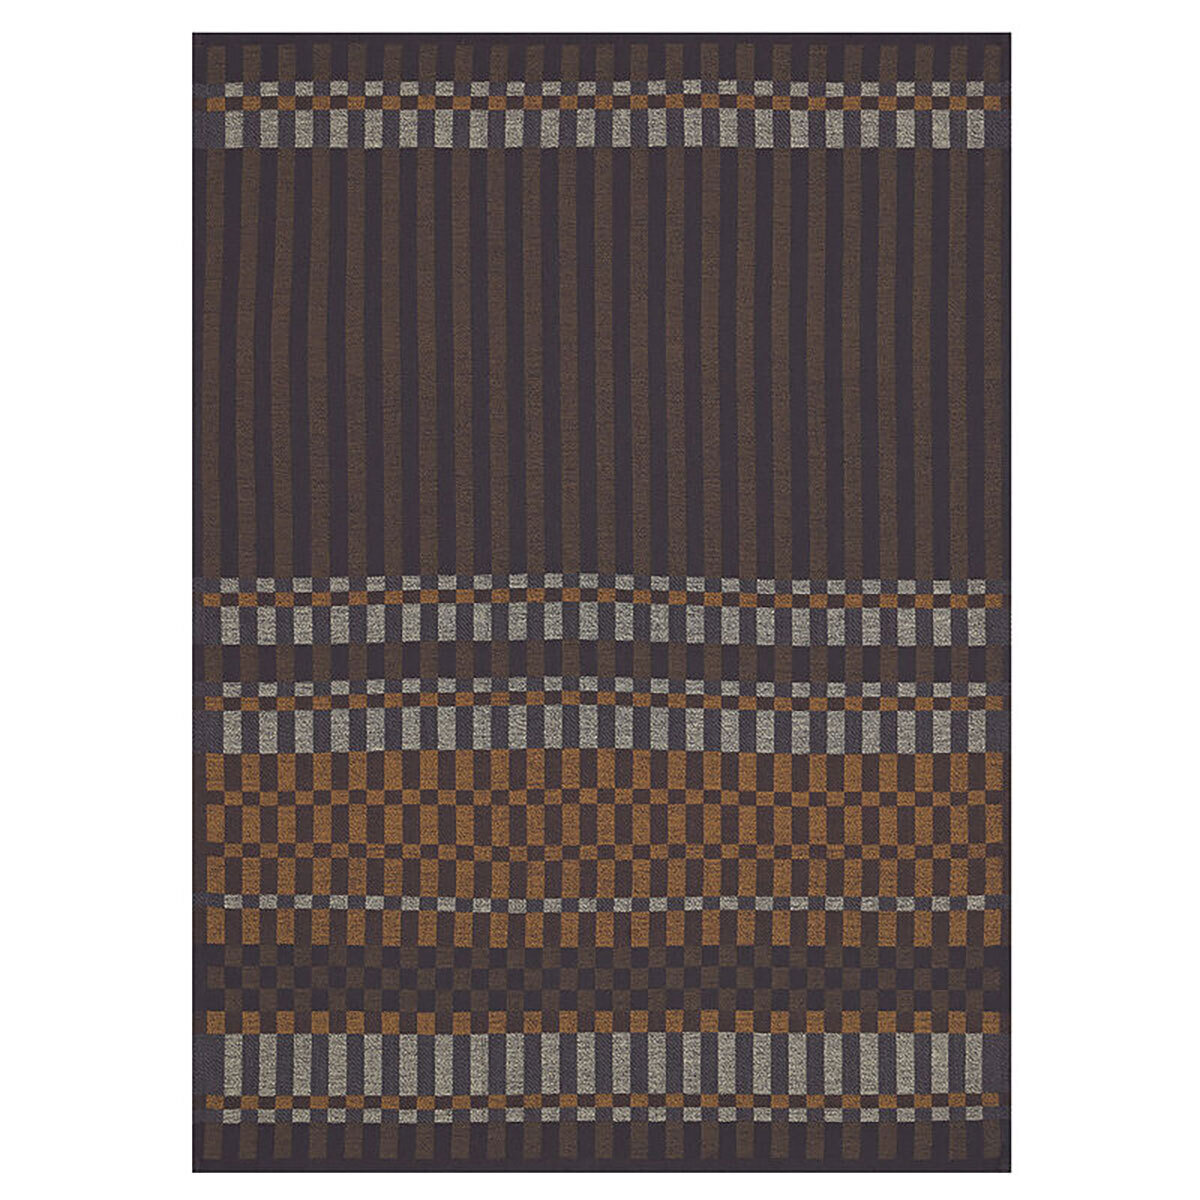 Le Jacquard Francais Tea Towel Origin Rythme Brown 100% Cotton 24 x 31 Inch 28233 Set of 4